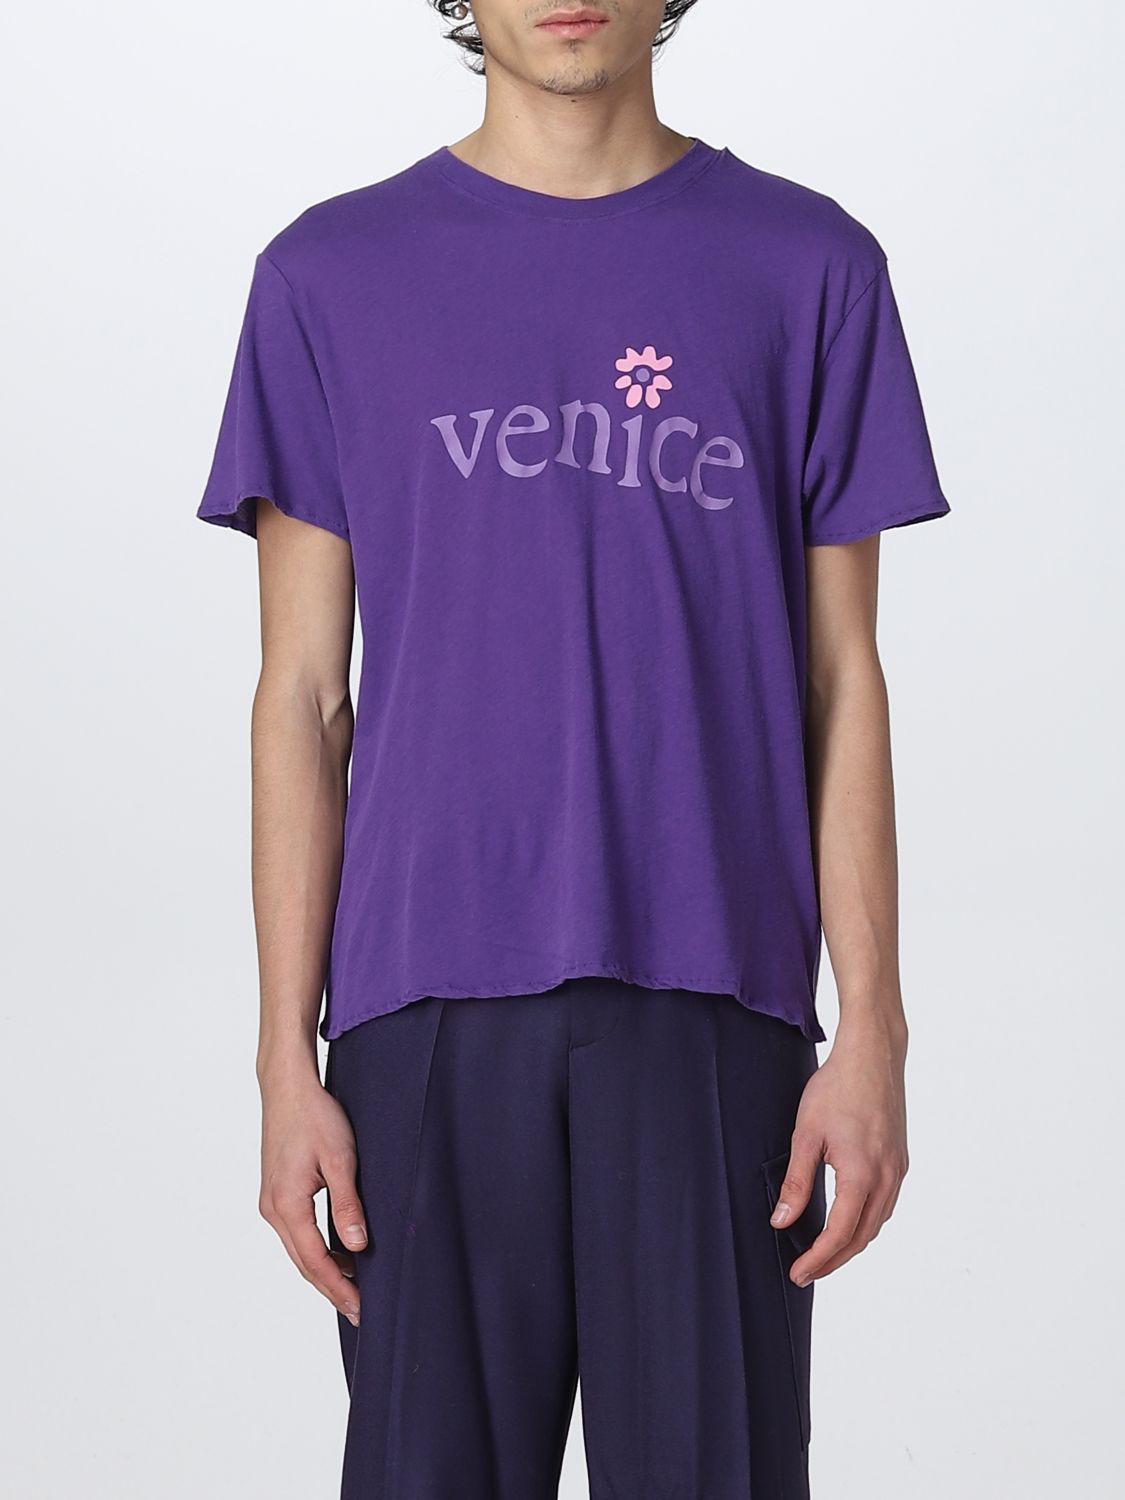 T恤 Erl: Erlt恤男士 紫色 1